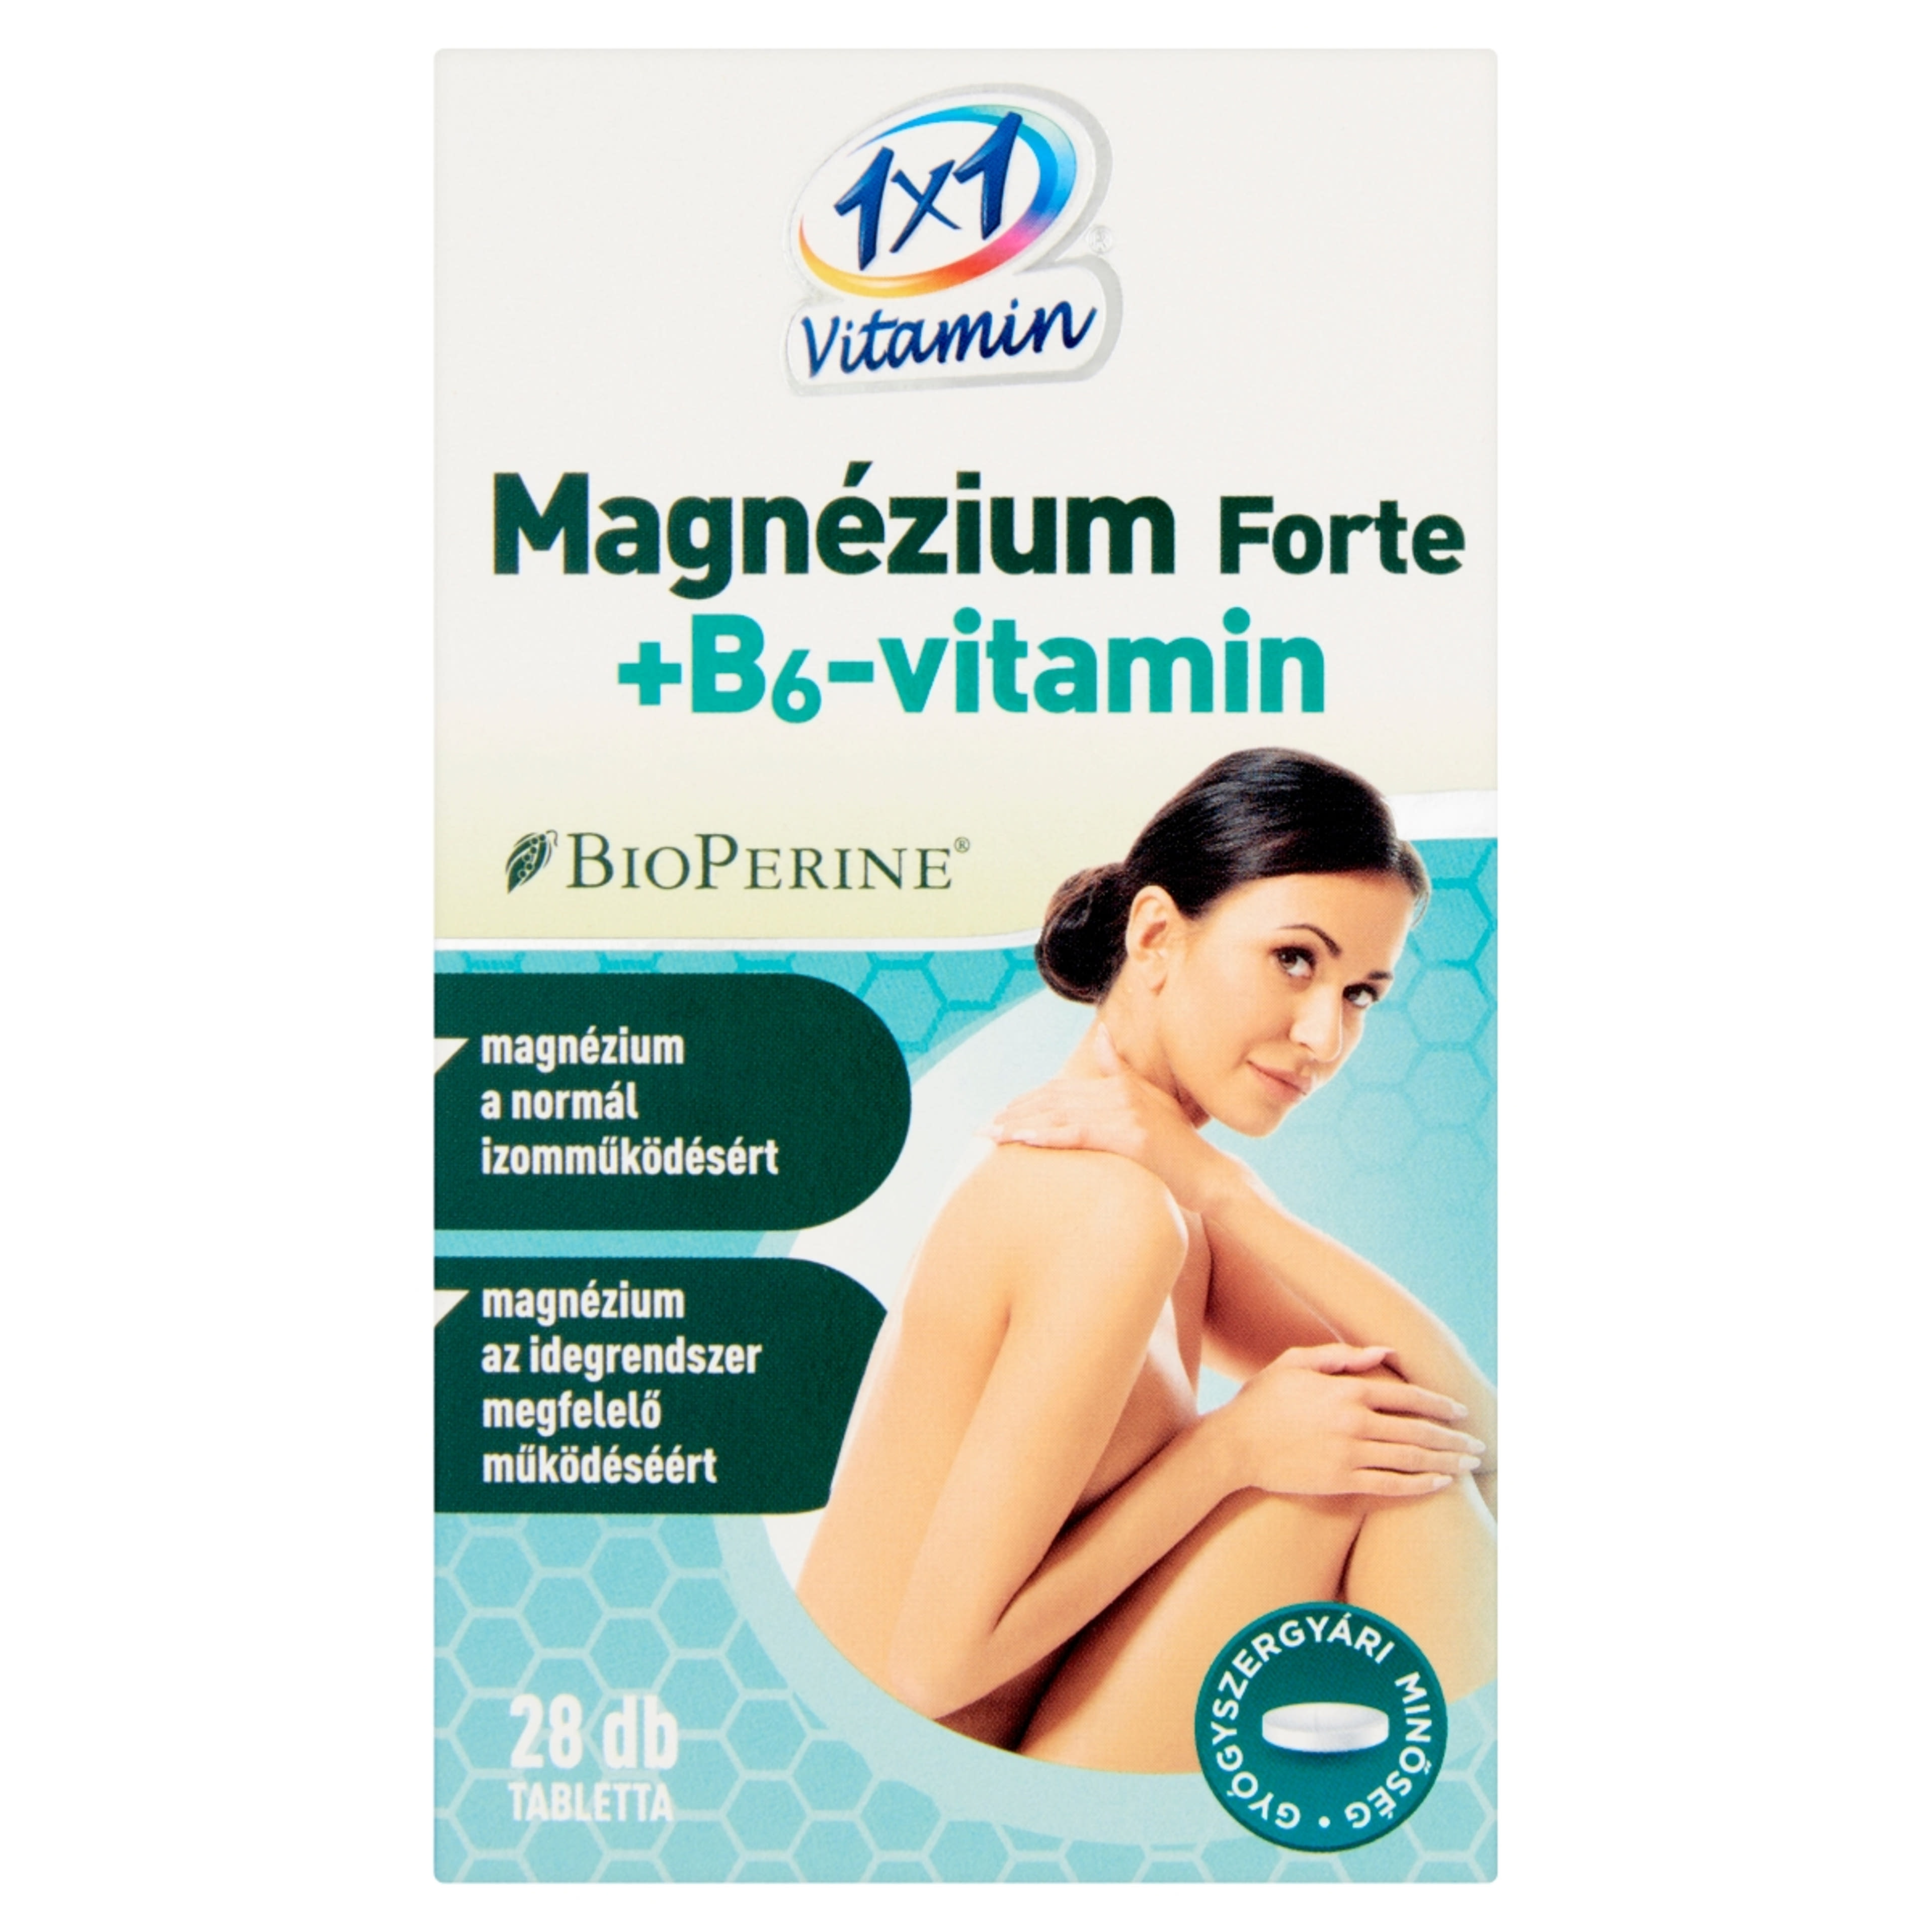 1x1 Vitamin Mg Forte+ B6 Vit Bioperin 500mg Tabletta - 28 db-1